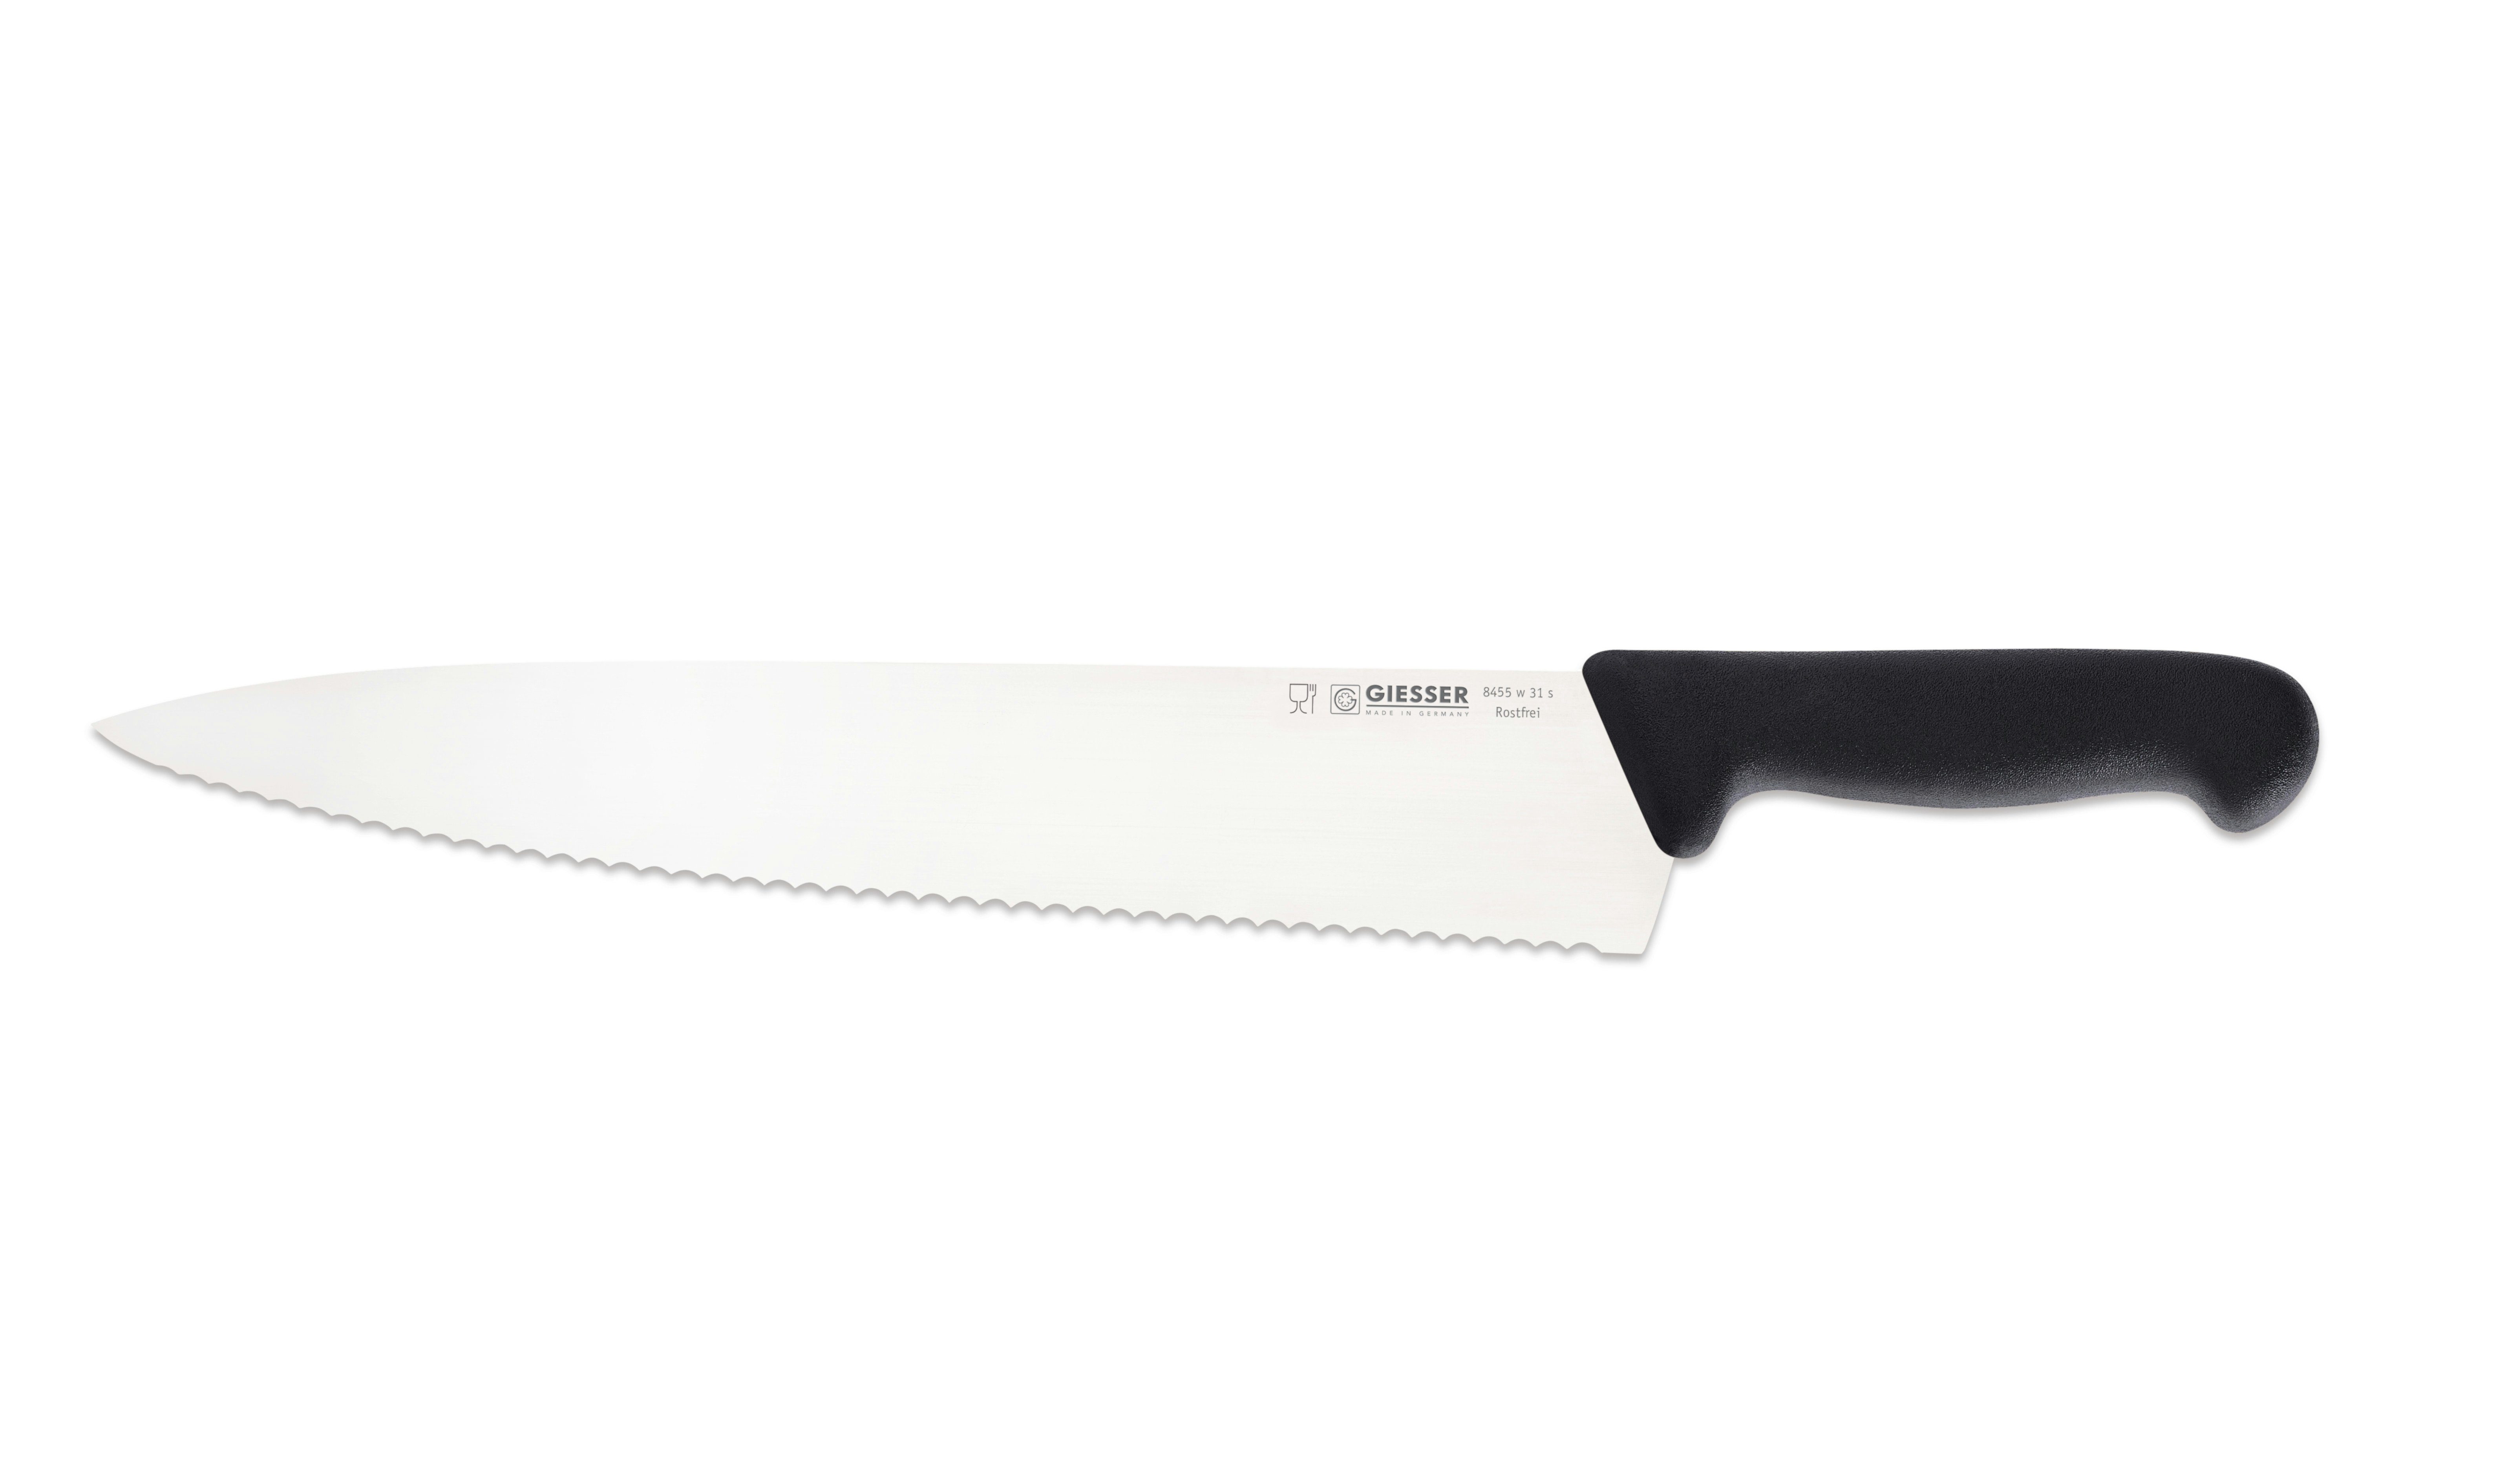 breit Handabzug, Küche breite Messer scharf, für 8455, Küchenmesser Form, jede schwarz-Welle Rostfrei, Kochmesser Giesser Ideal